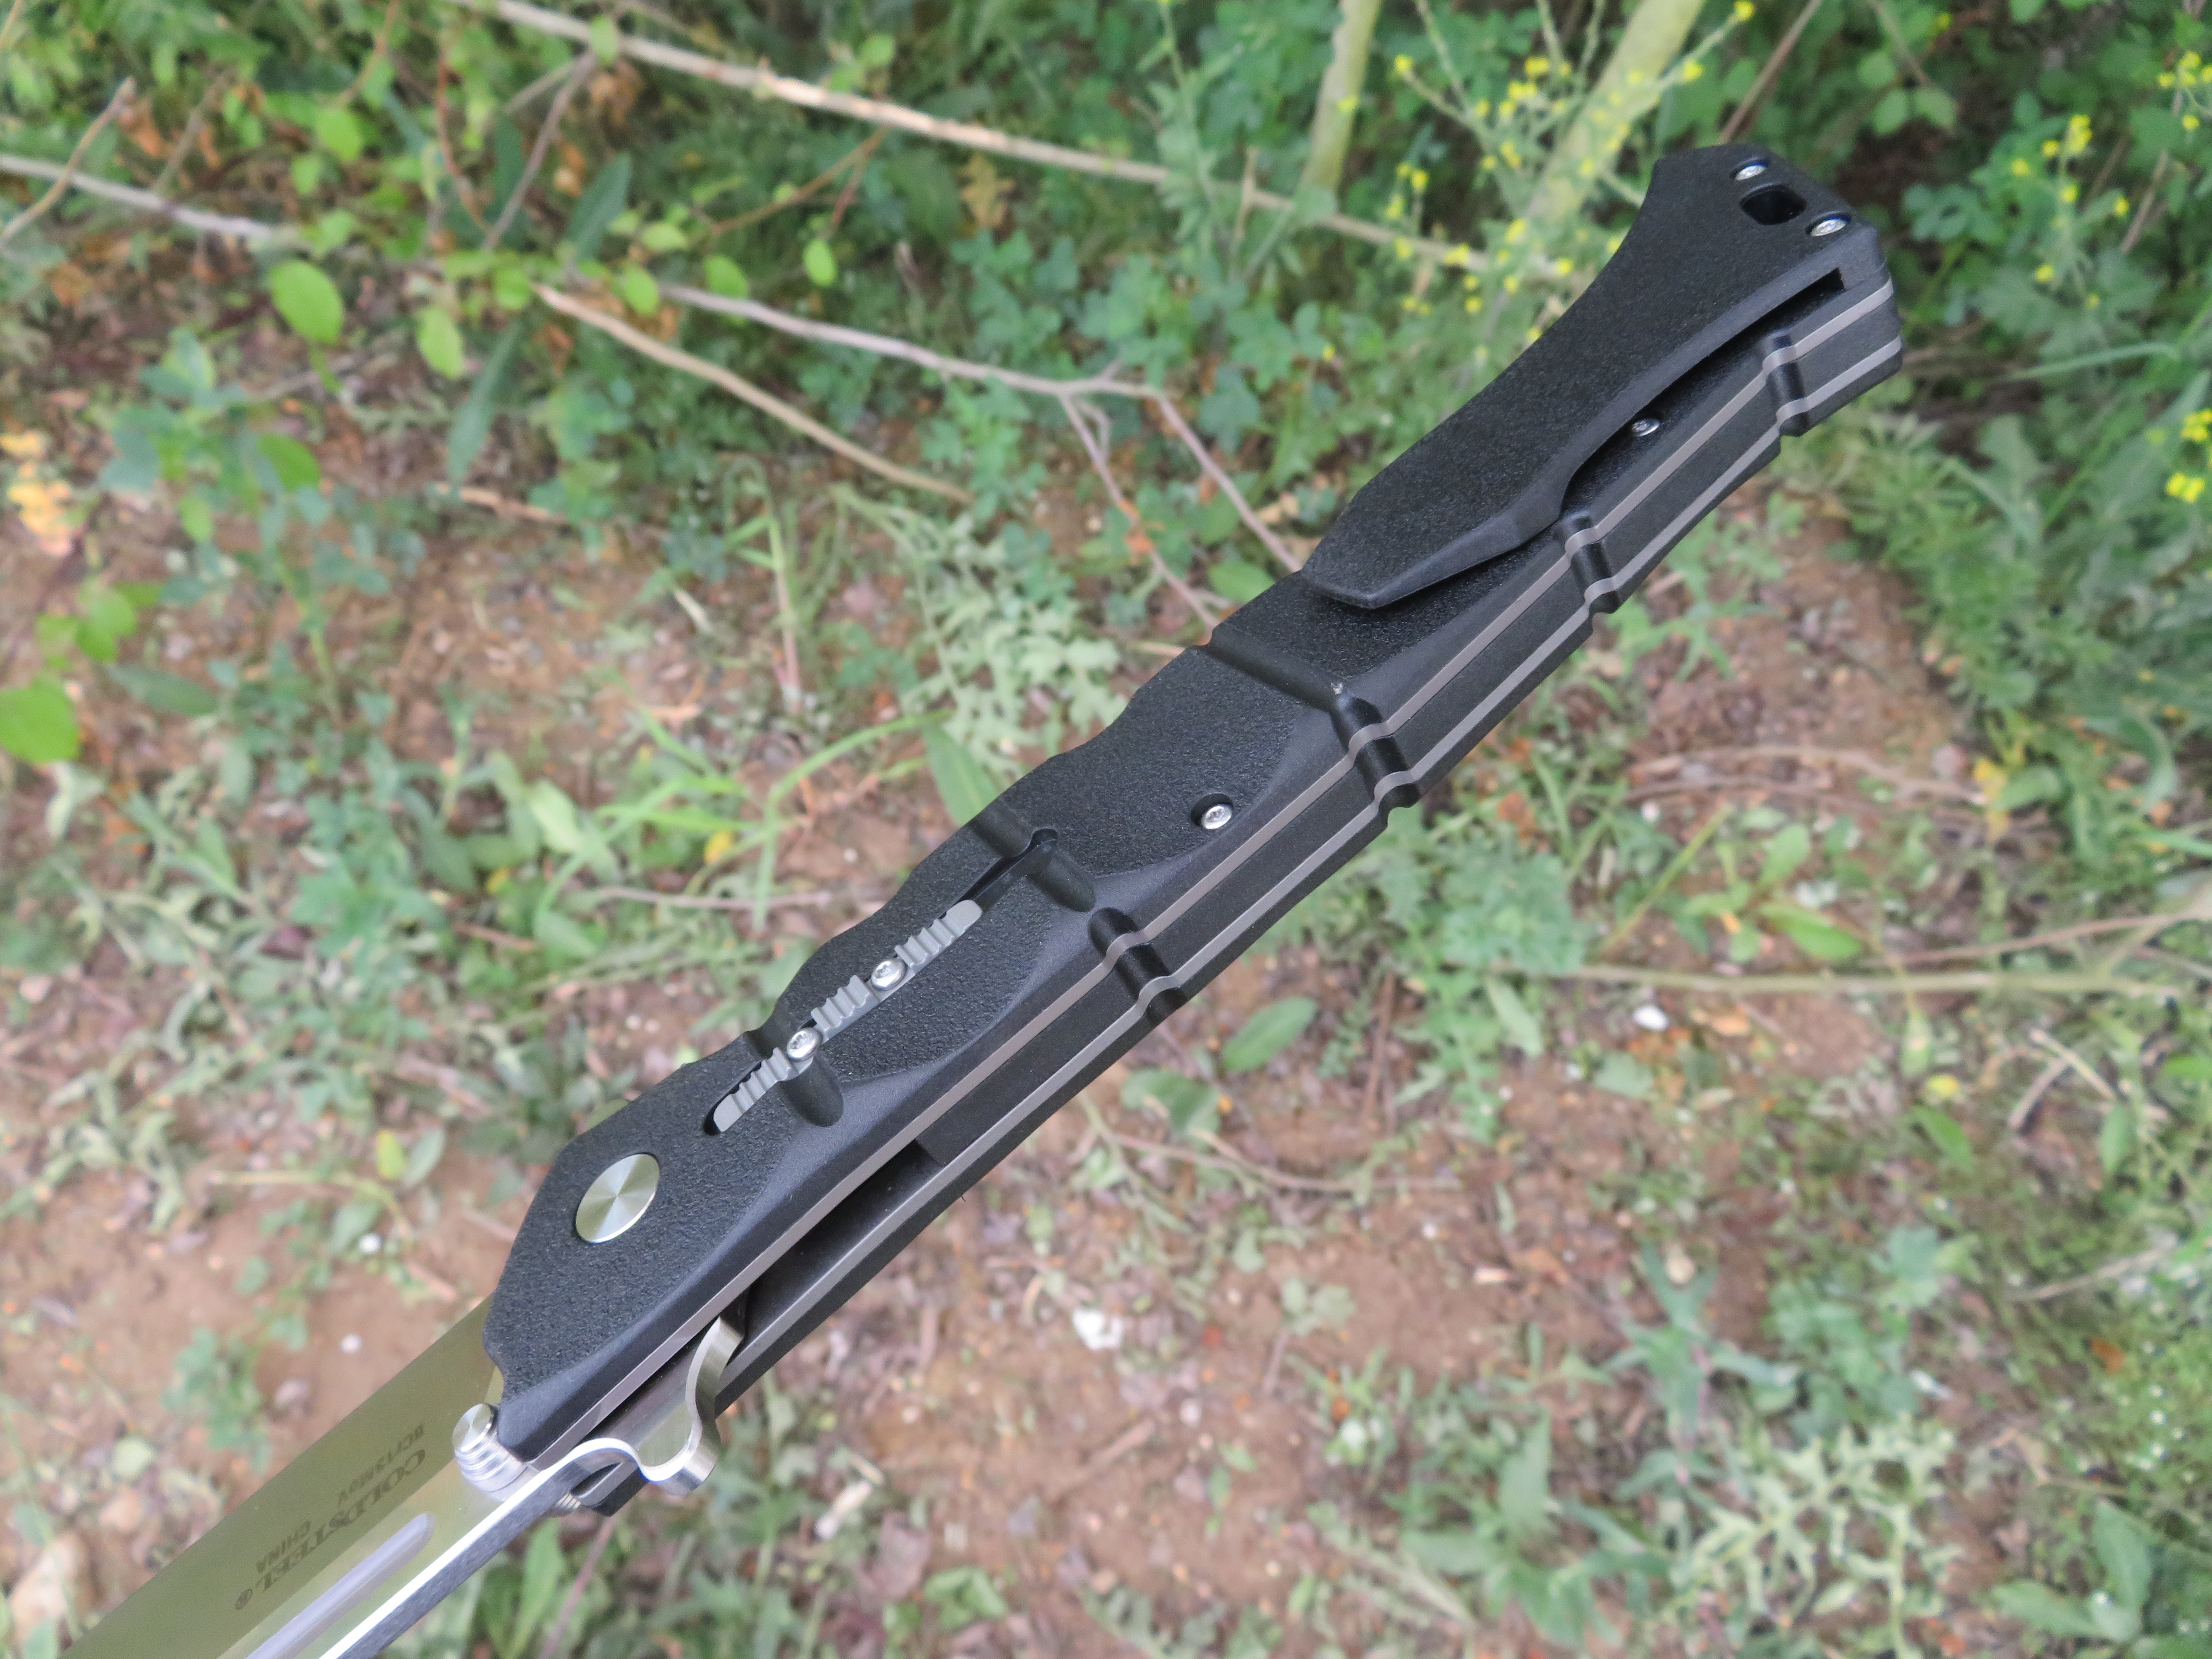 Rukojeť nože Luzon je vyrobena z nylonu se skelným vláknem s označením GFN.